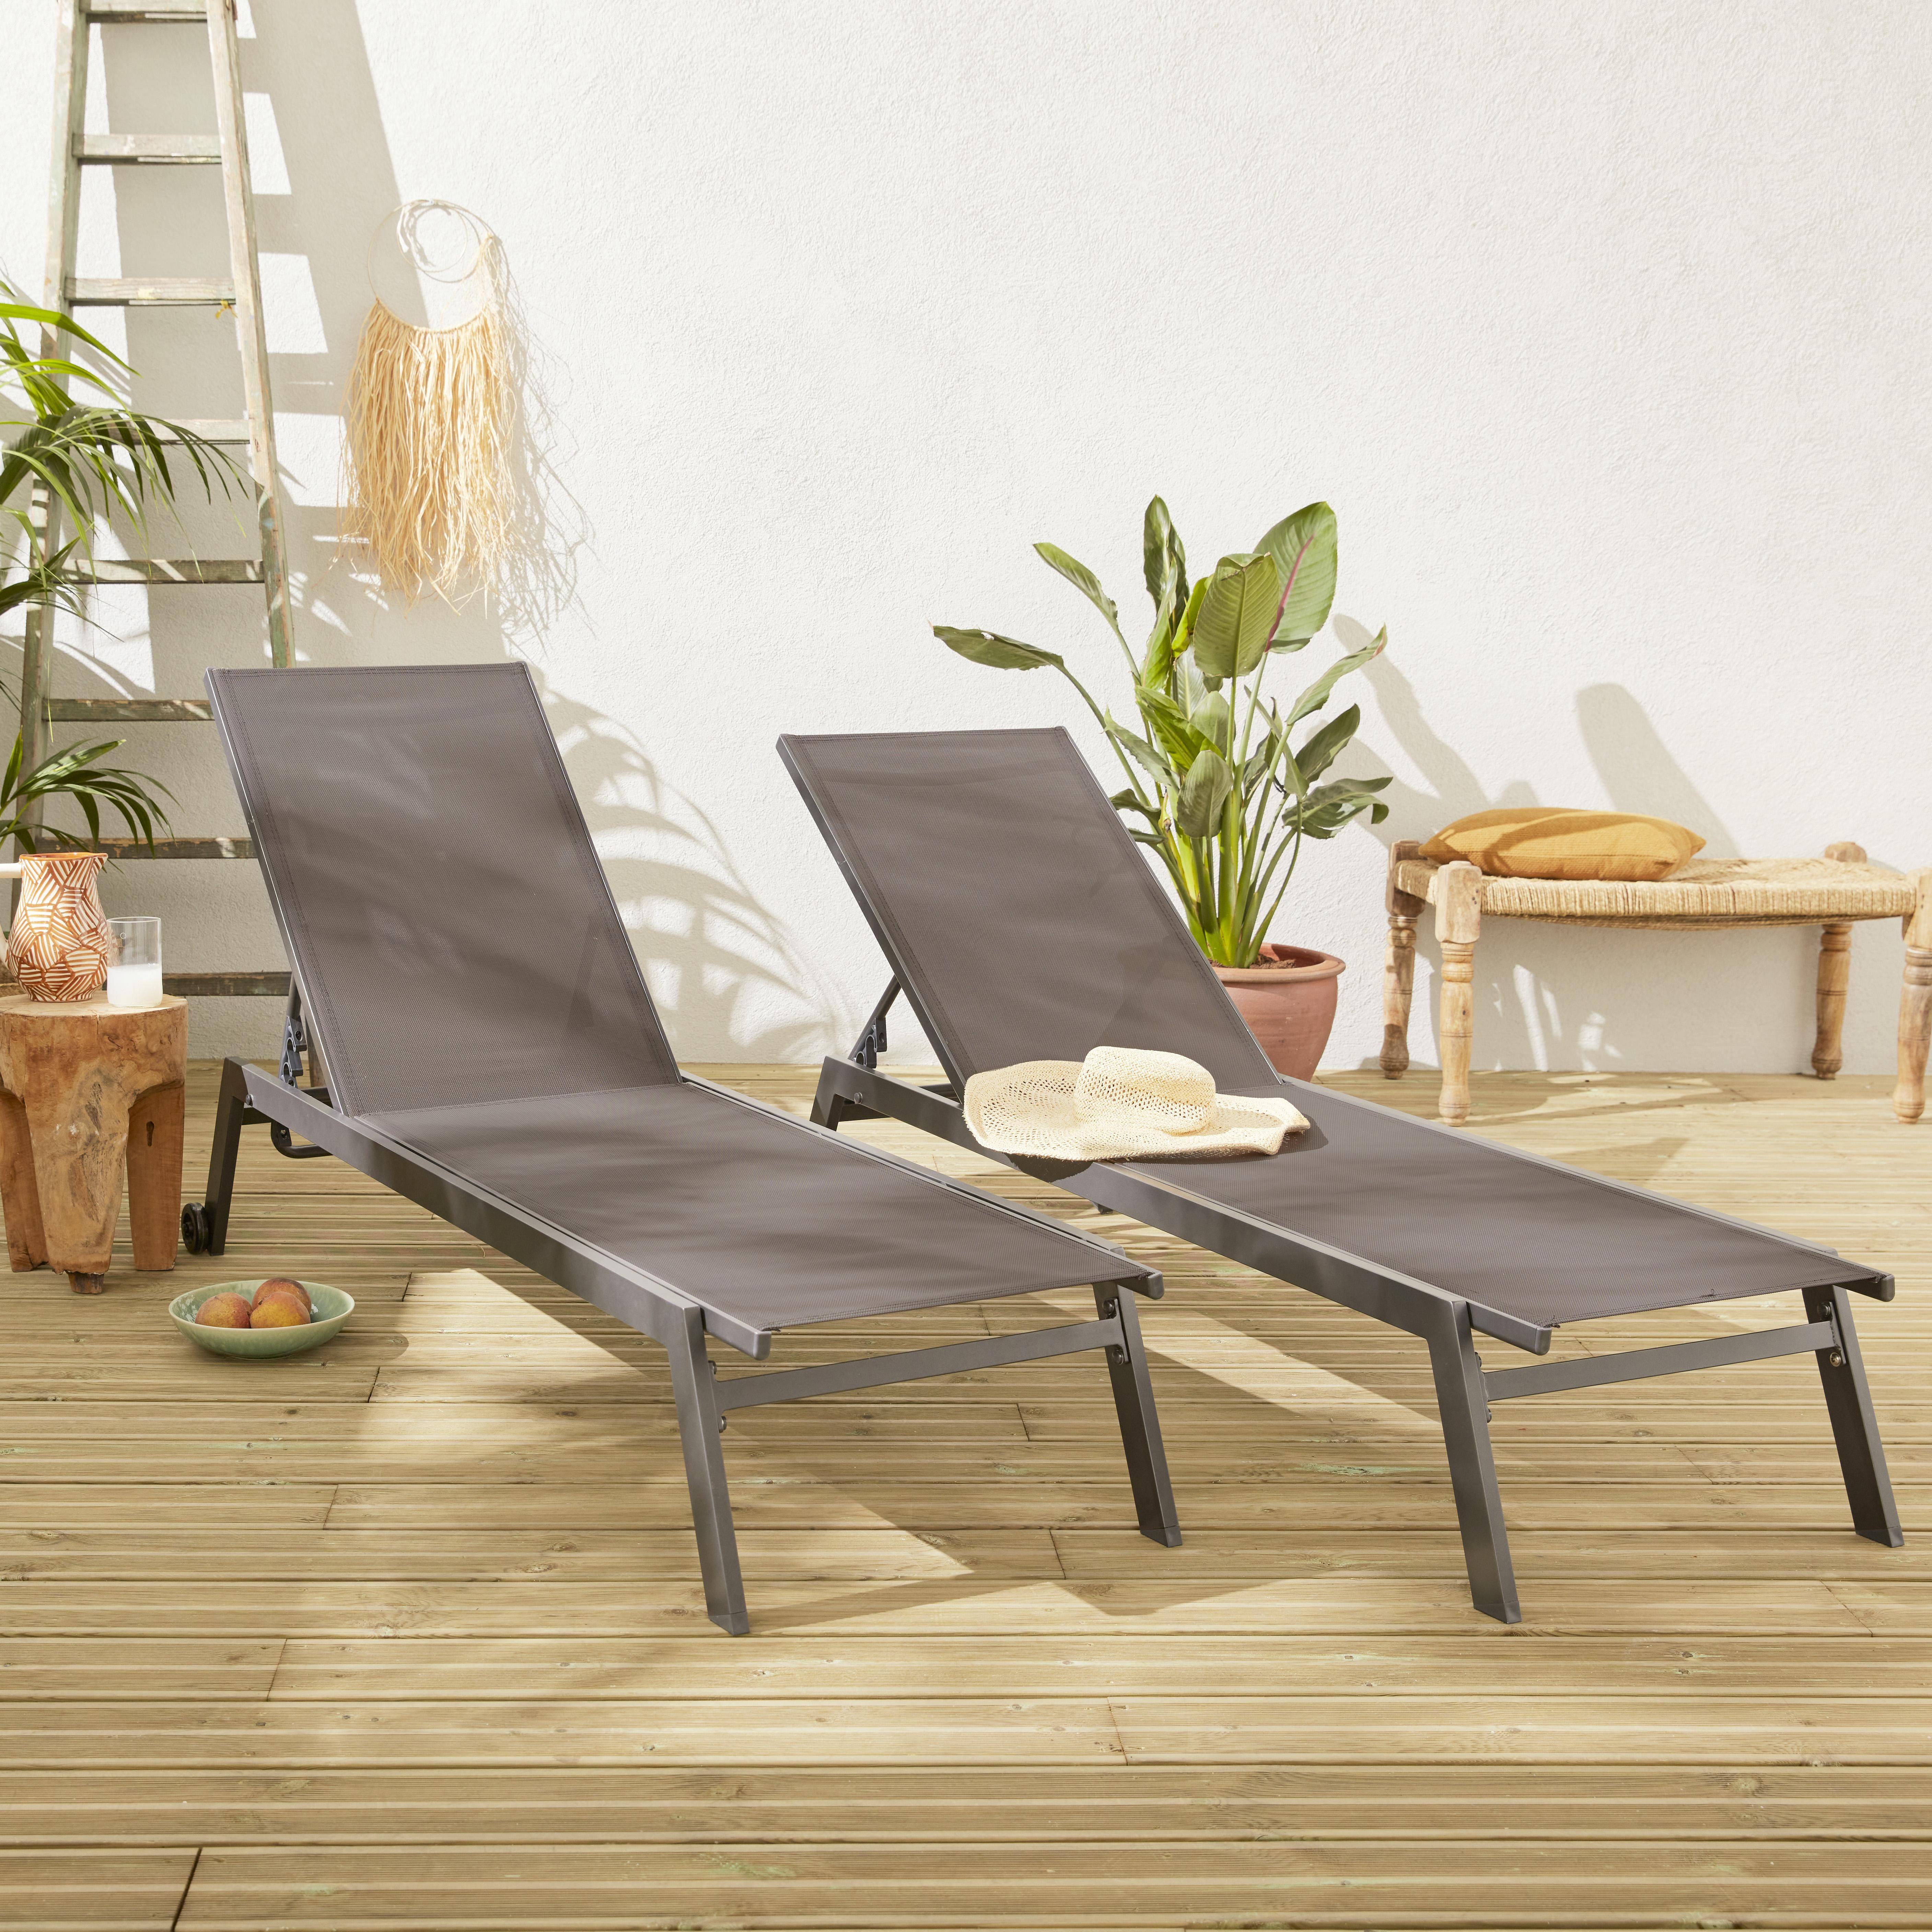 Set mit 2 ELSA Sonnenliegen aus grauem Aluminium und dunkelgrauem Textilene, Liegestühle mit mehreren Positionen und Rädern Photo1